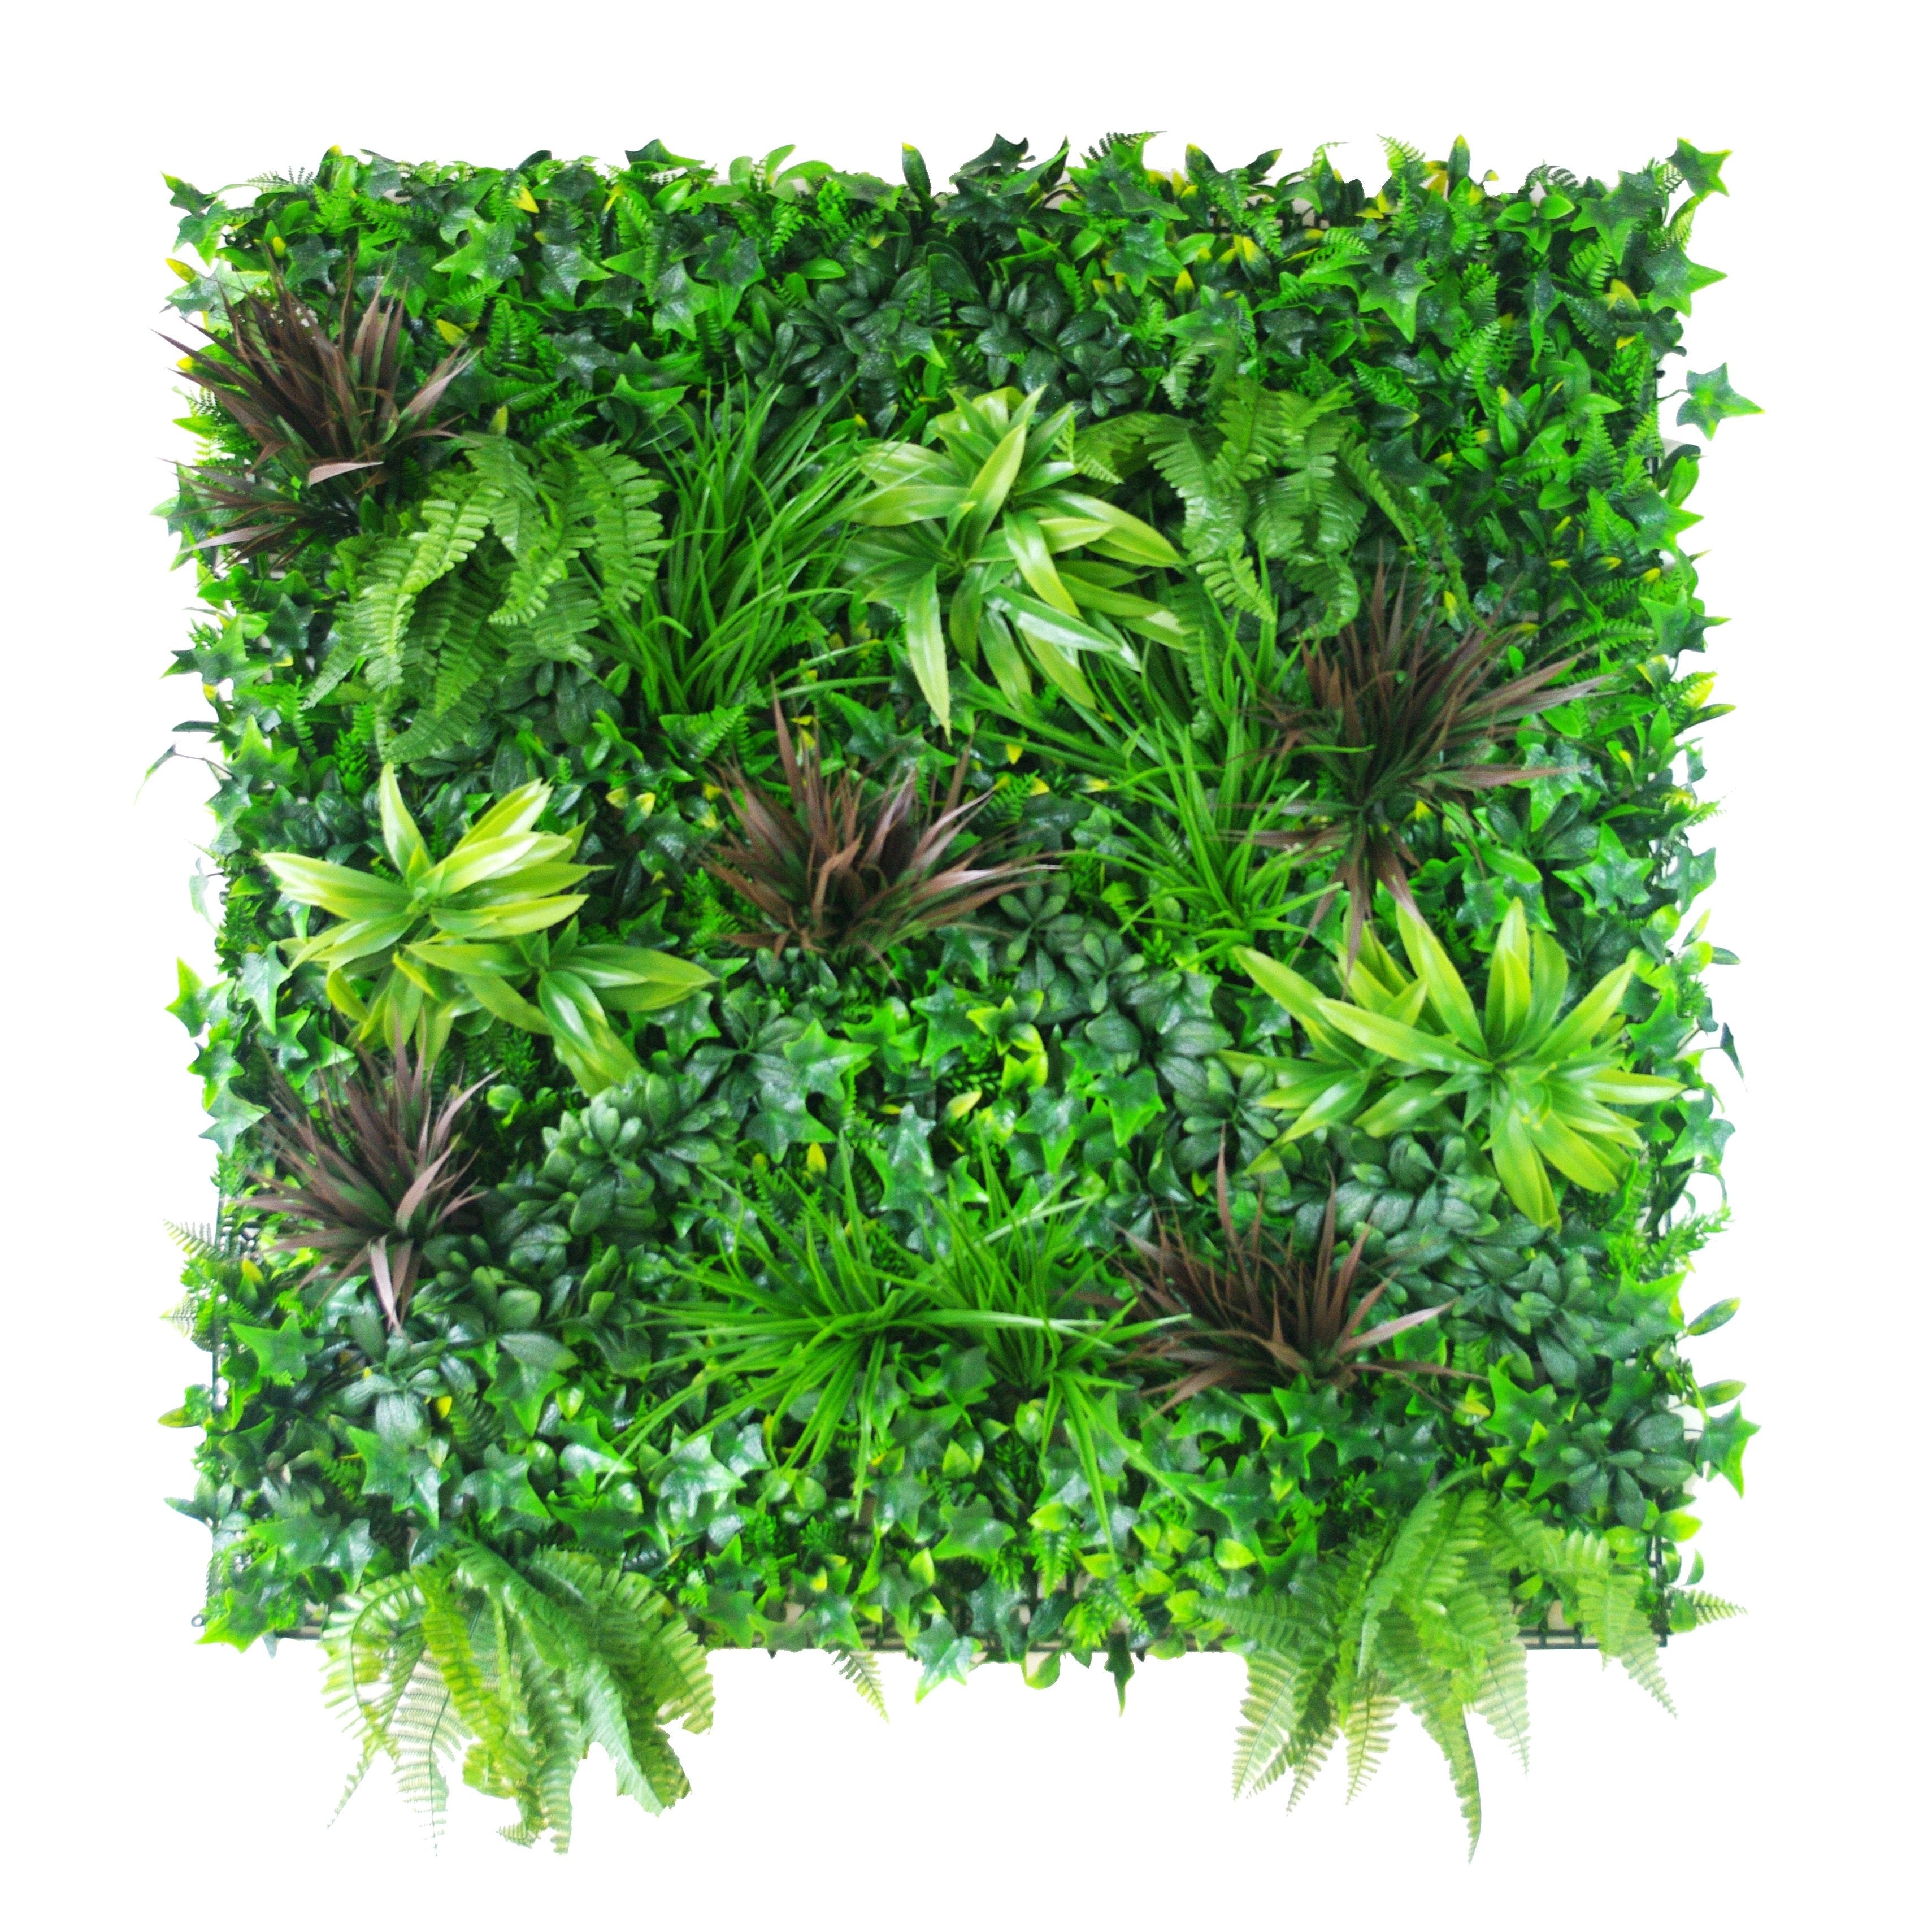 Green Beet Artificial Vertical Garden / Fake Green Wall 1m x 1m UV Resistant